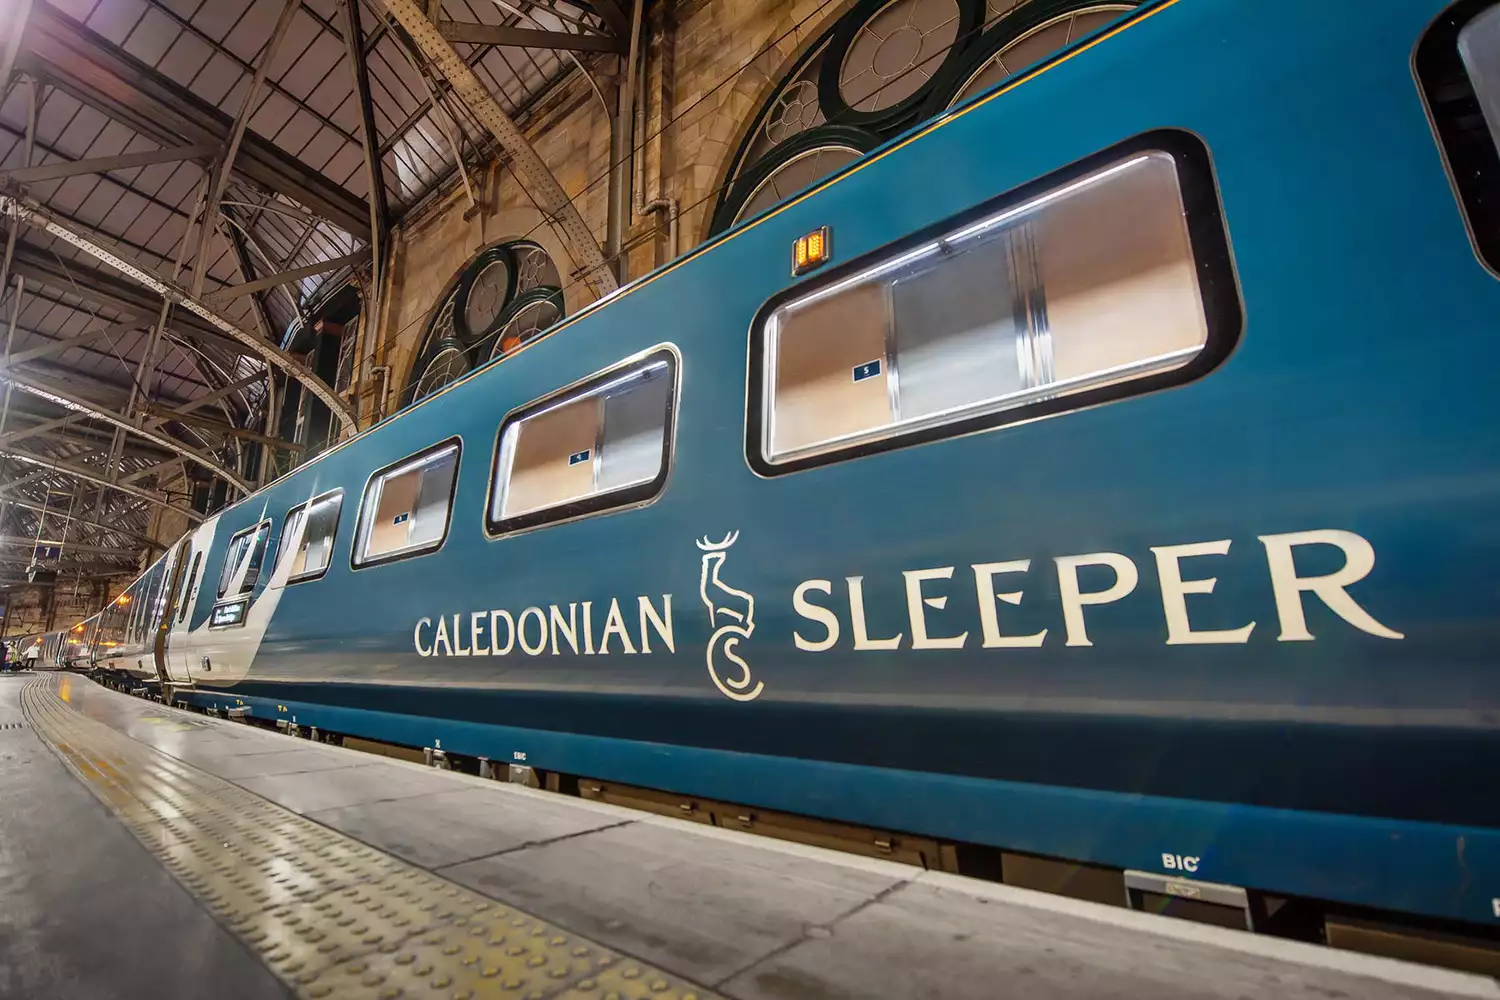 Caledonian Sleeper